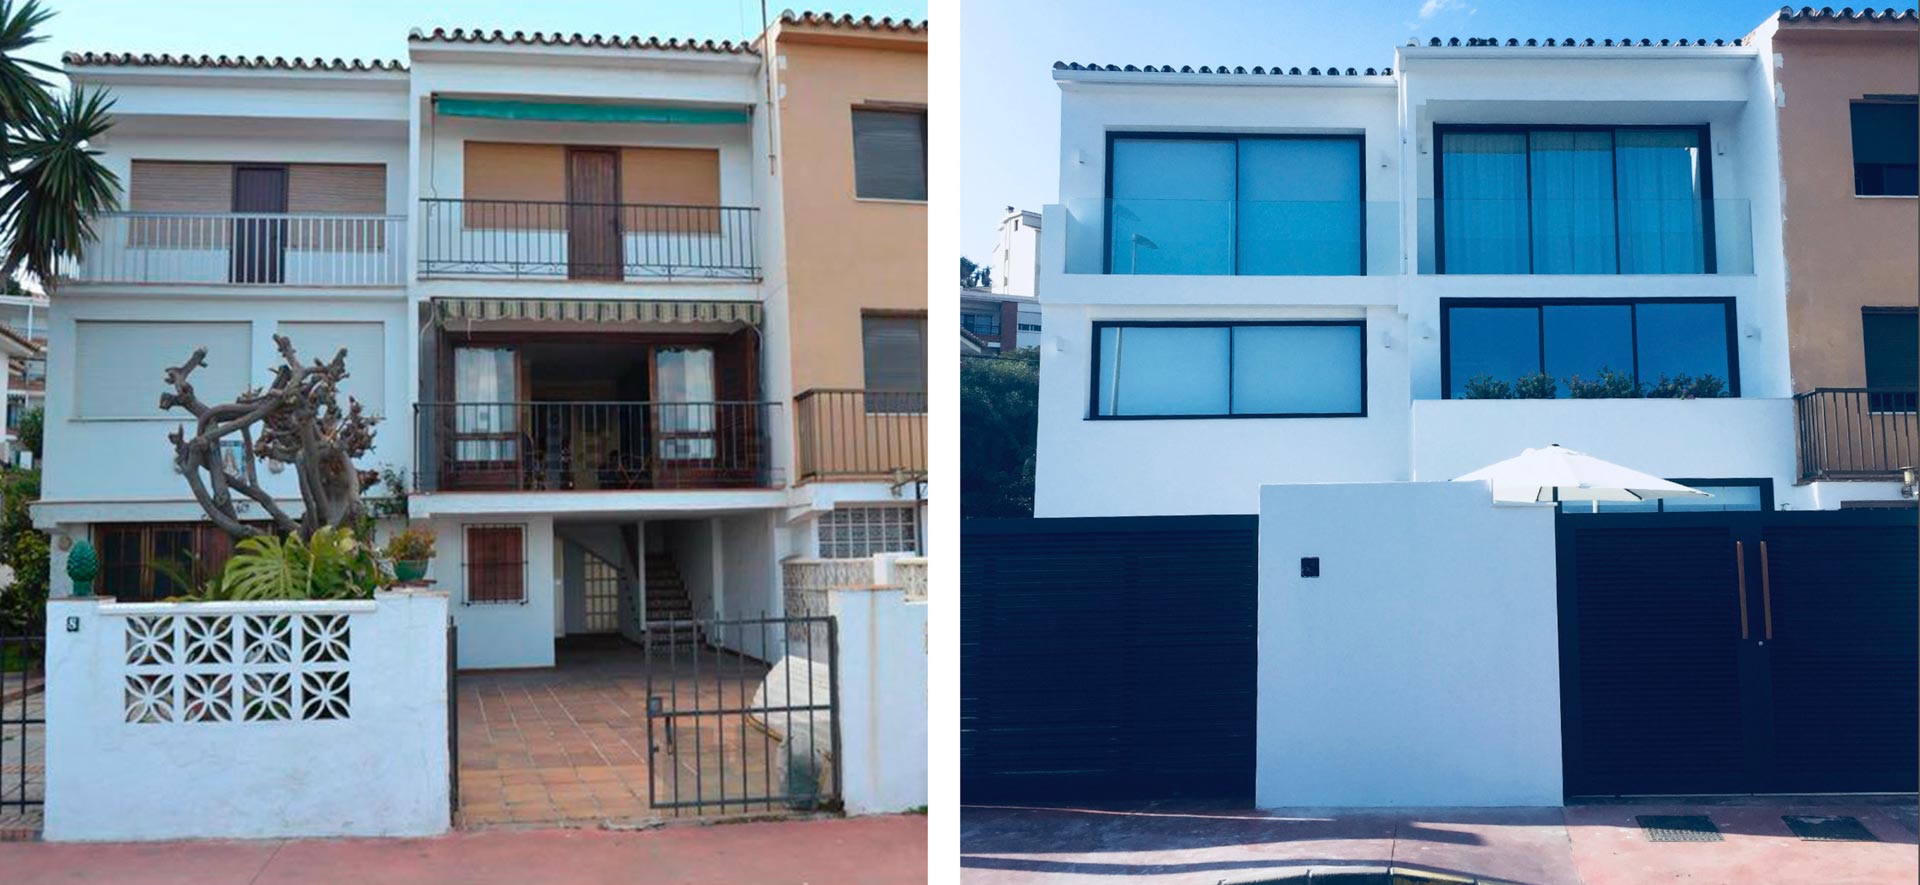 Sate en vivienda unifamiliar, Málaga (Rincón de la Victoria)